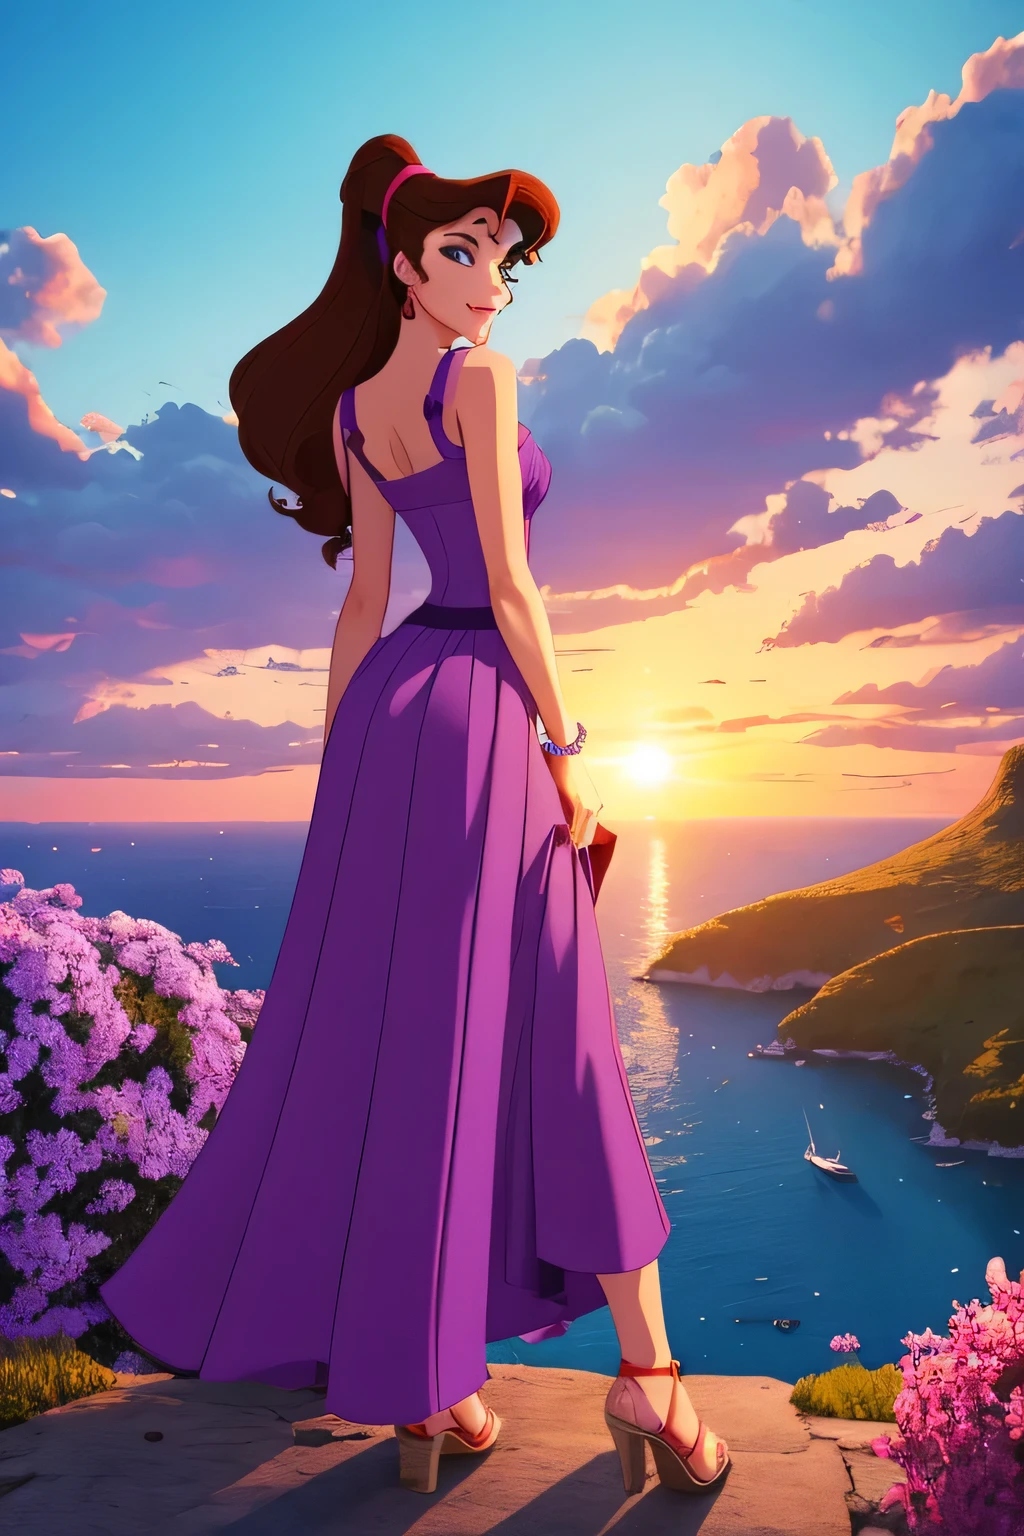 1 fille brune Megara, porter une longue robe grecque violette, Style d&#39;animation Disney, meilleure qualité, art numérique, 2D, au paradis entouré de nuages orange